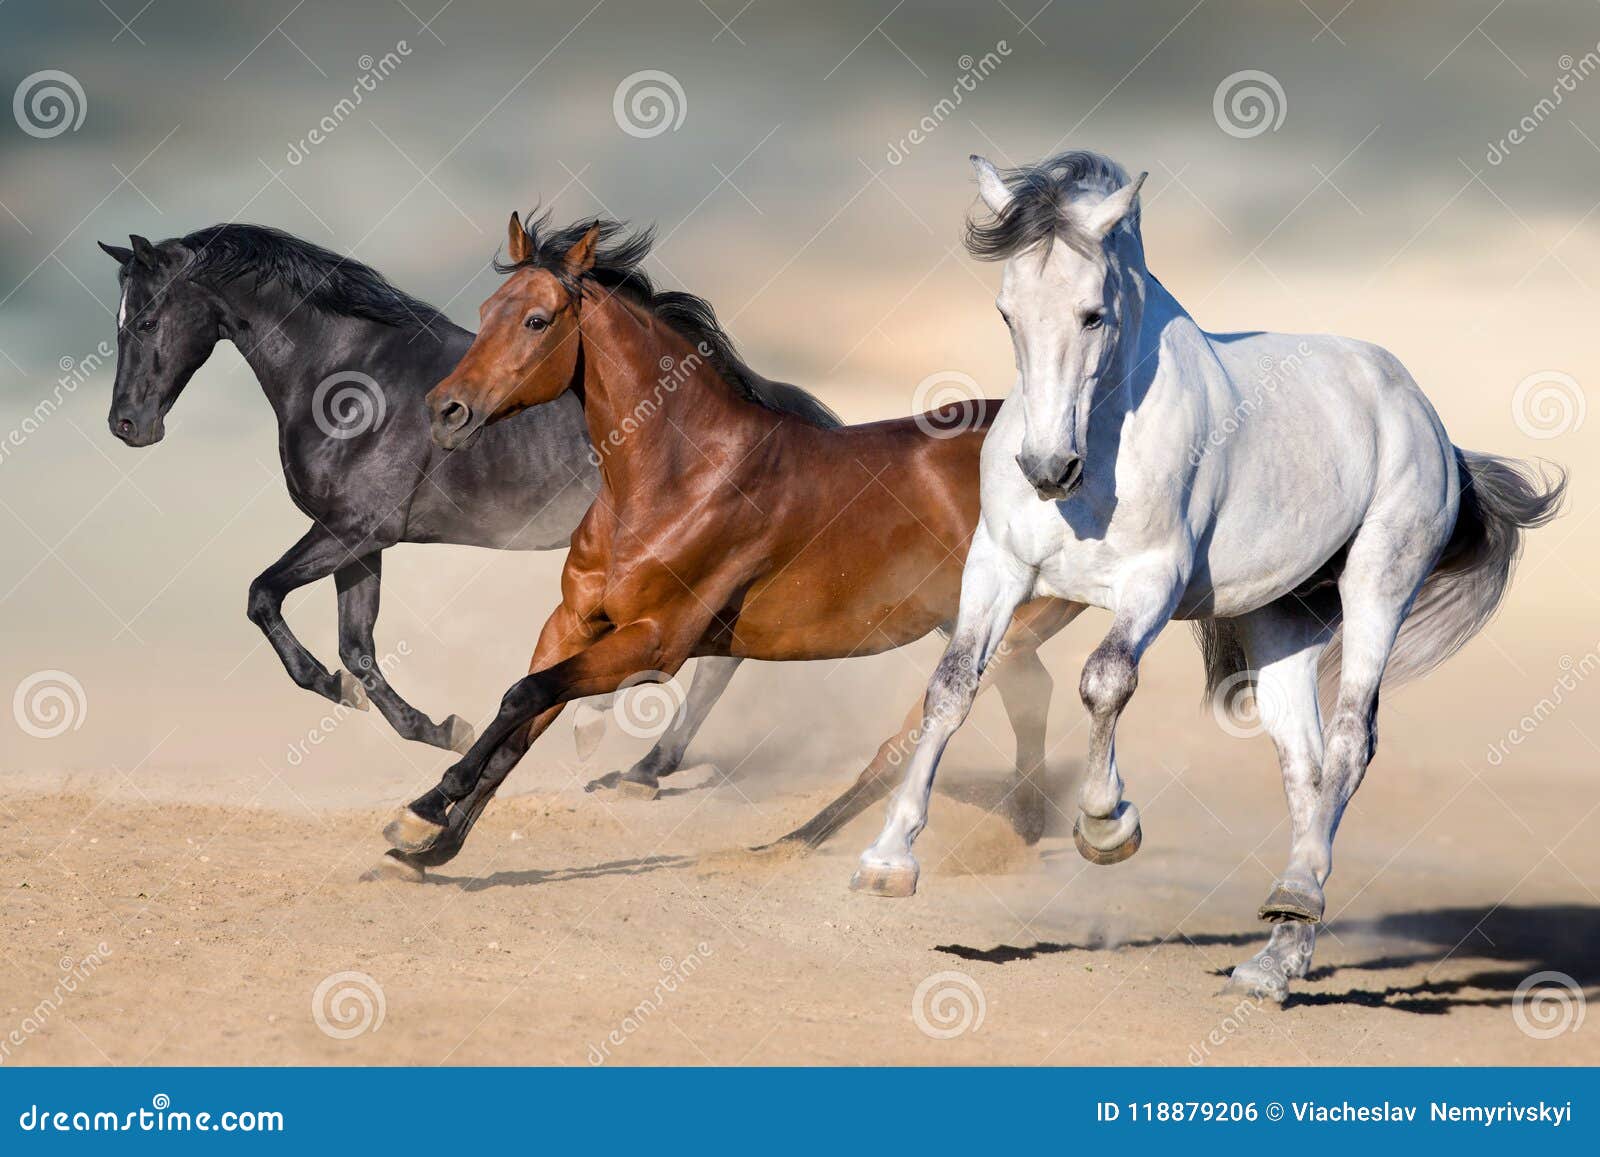 horses run gallop